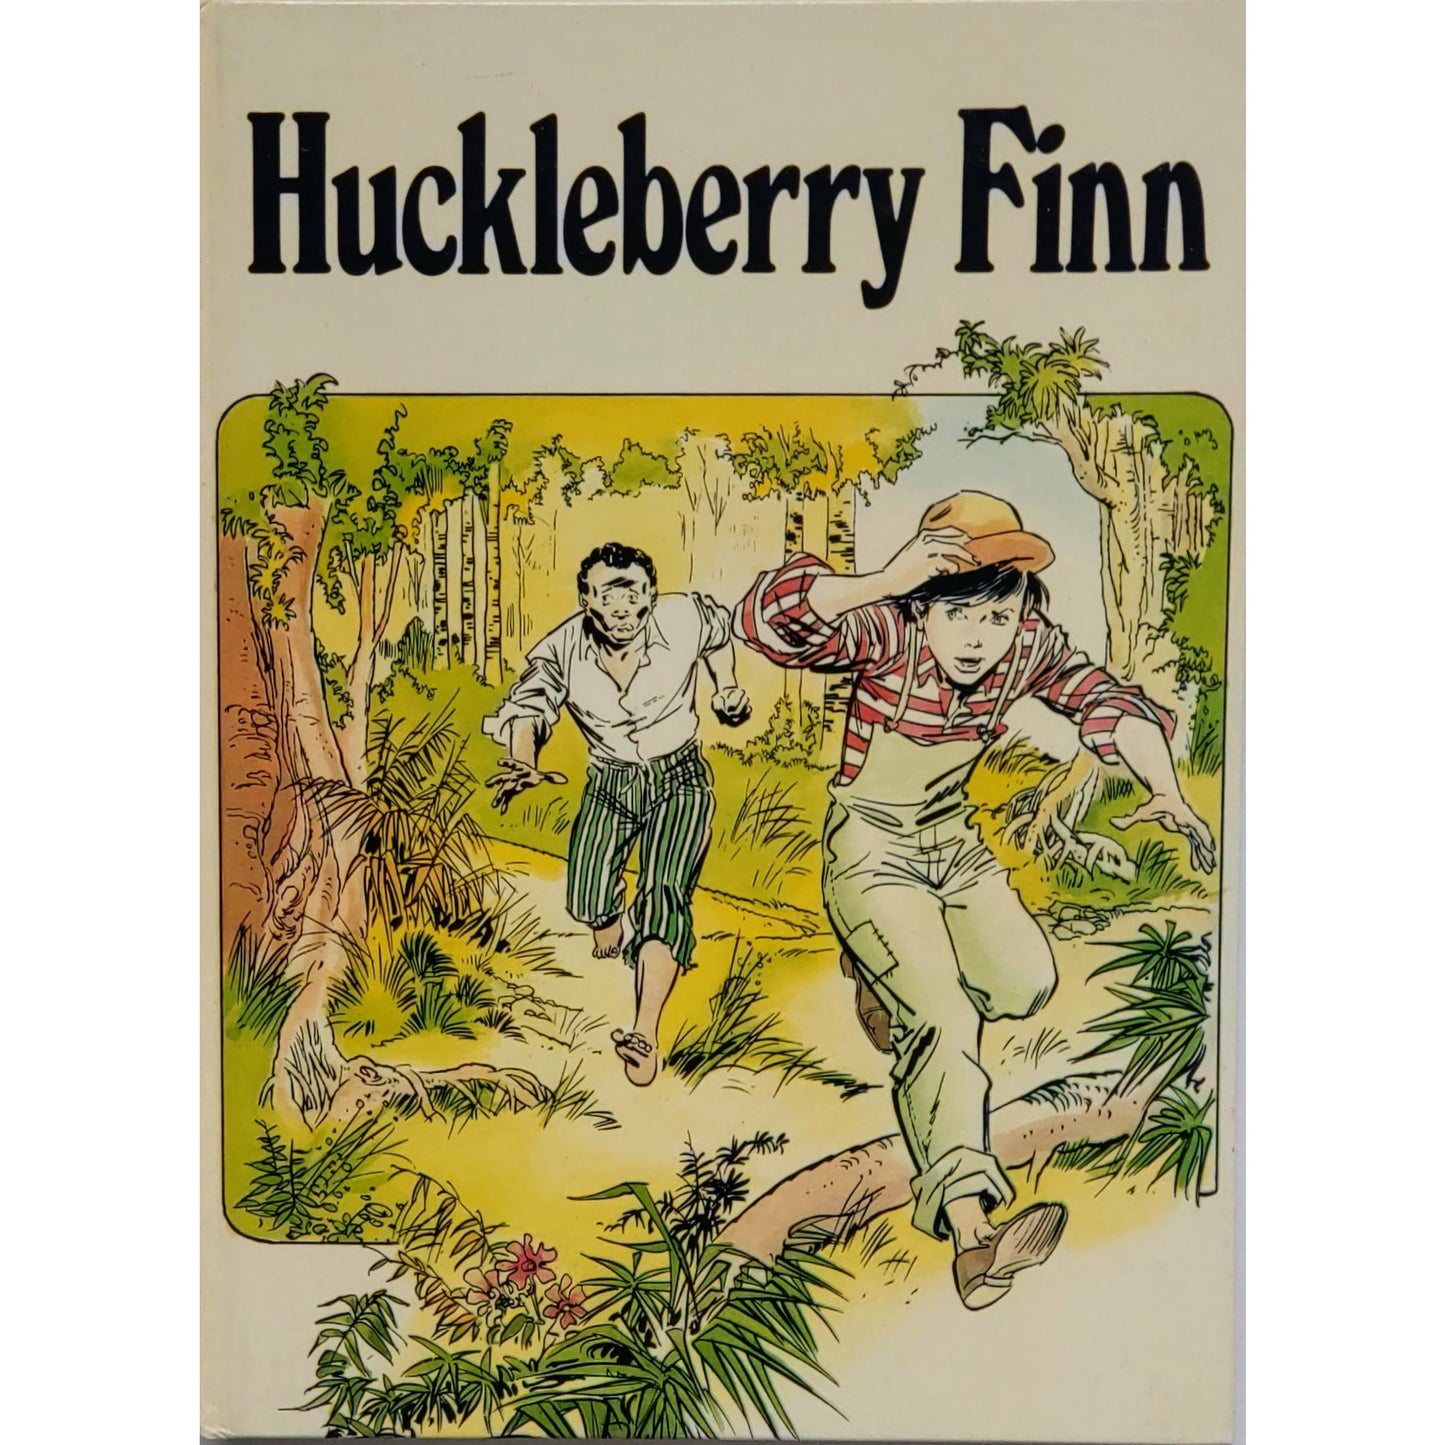 Huckleberry Finn av Mark Twain. Brukte bøker fra Bokklubben barnas bokpakke